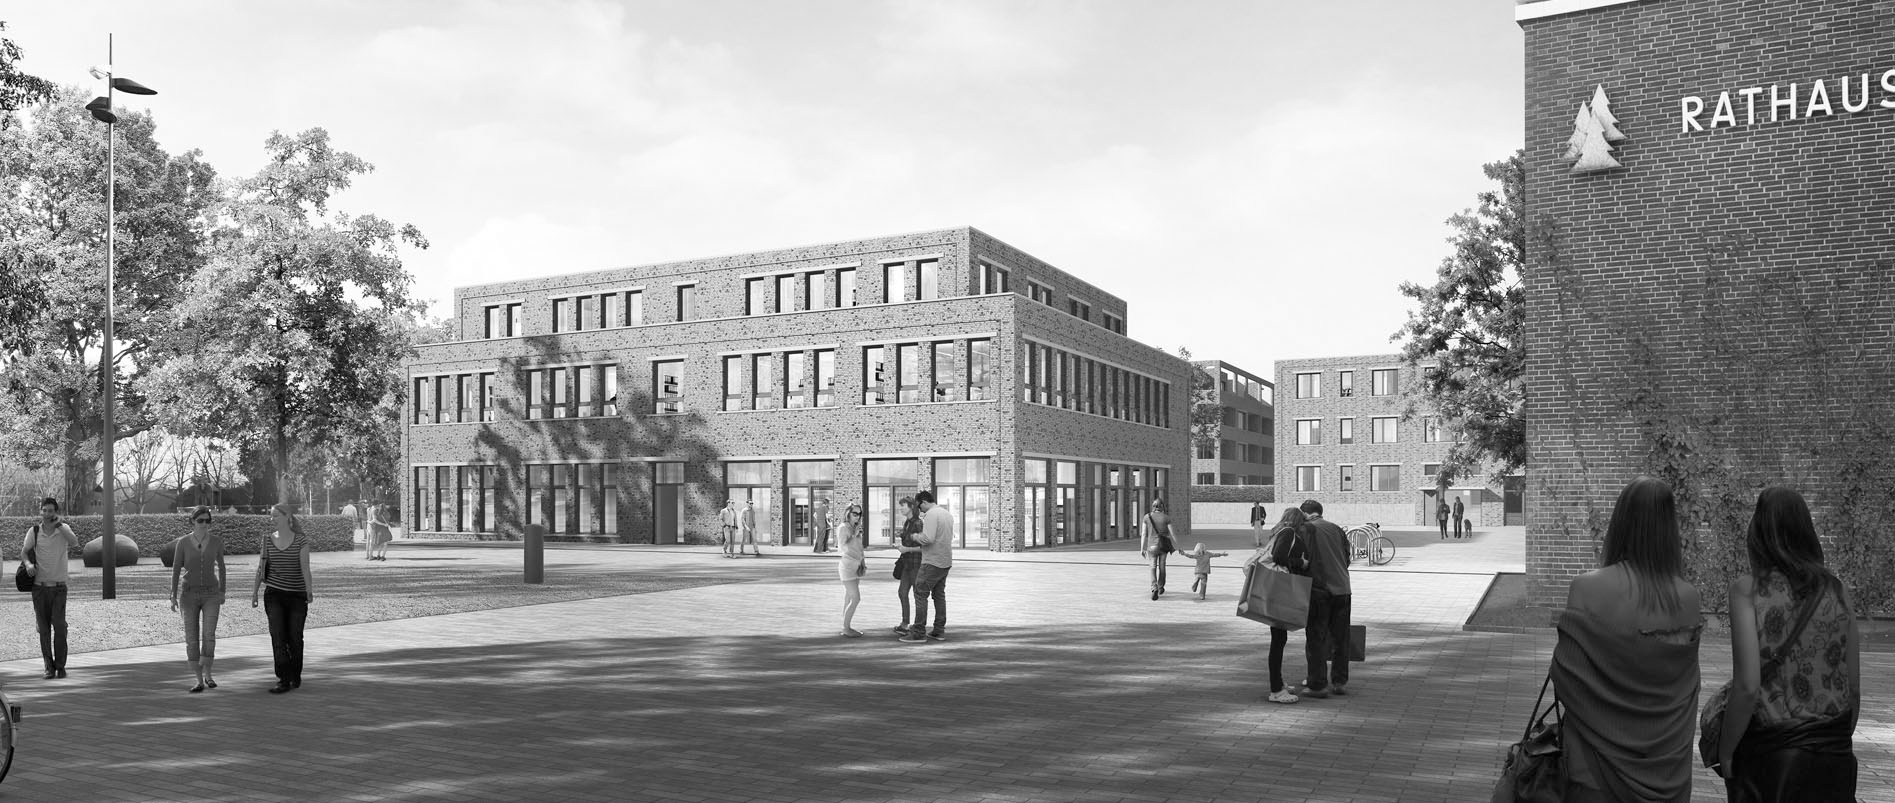 Das neue Rathausquartier in Halstenbek